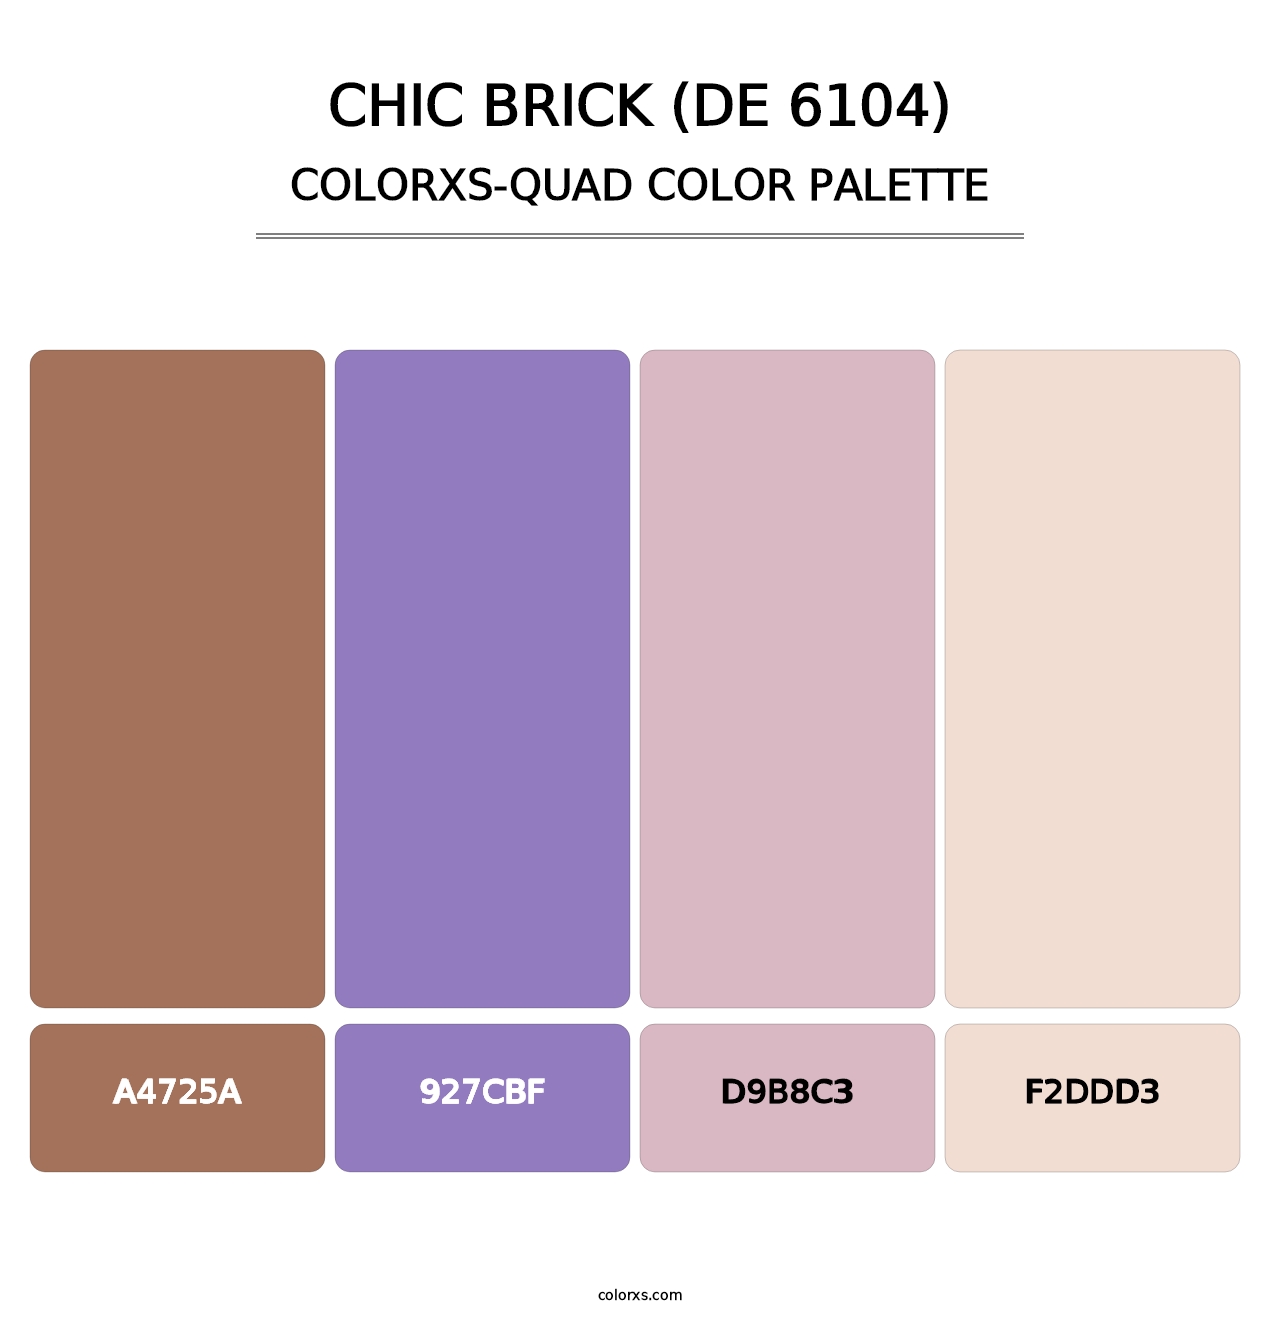 Chic Brick (DE 6104) - Colorxs Quad Palette